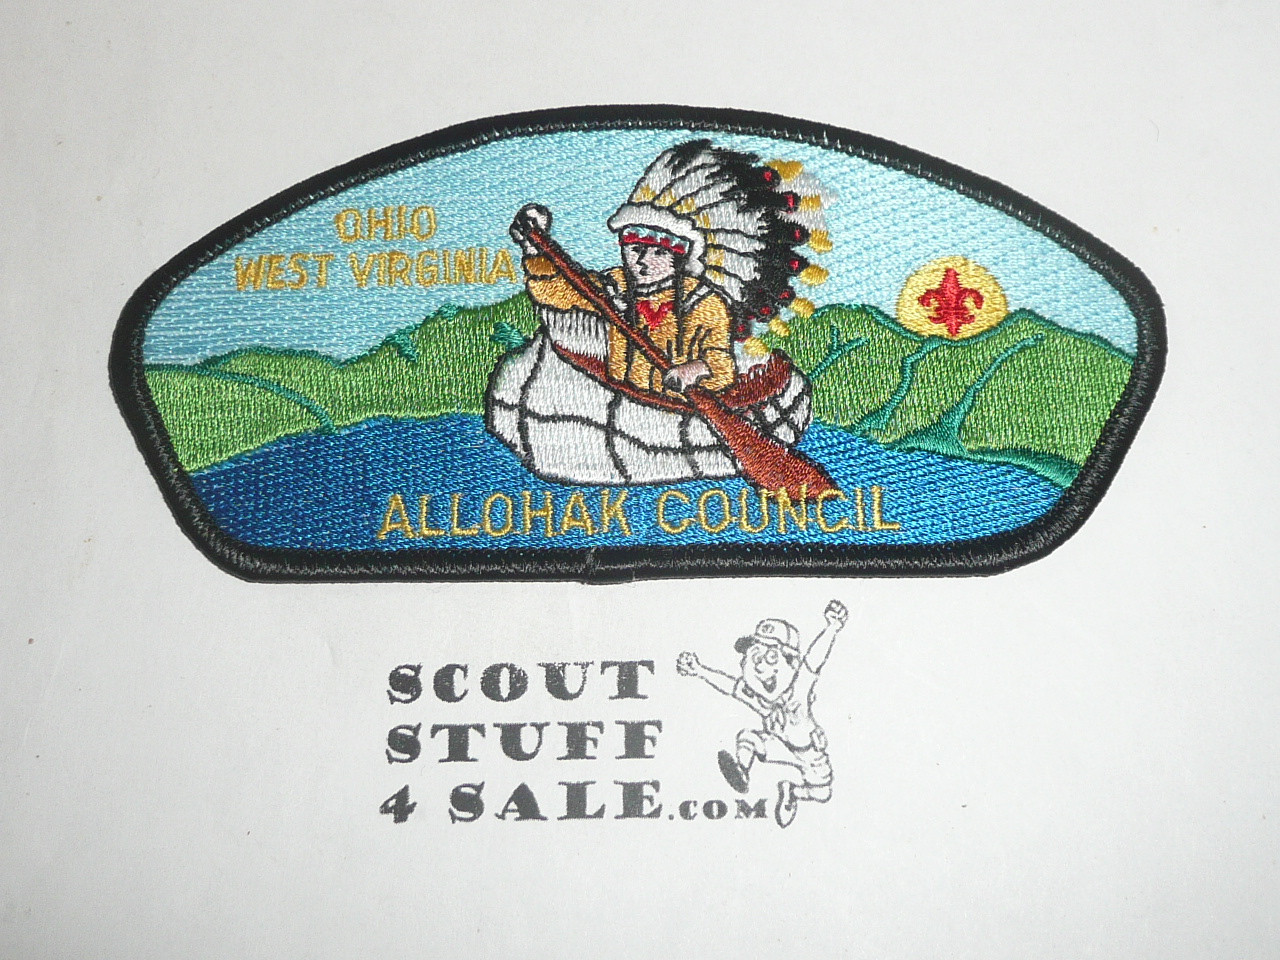 Allohak Council s15 CSP - Scout